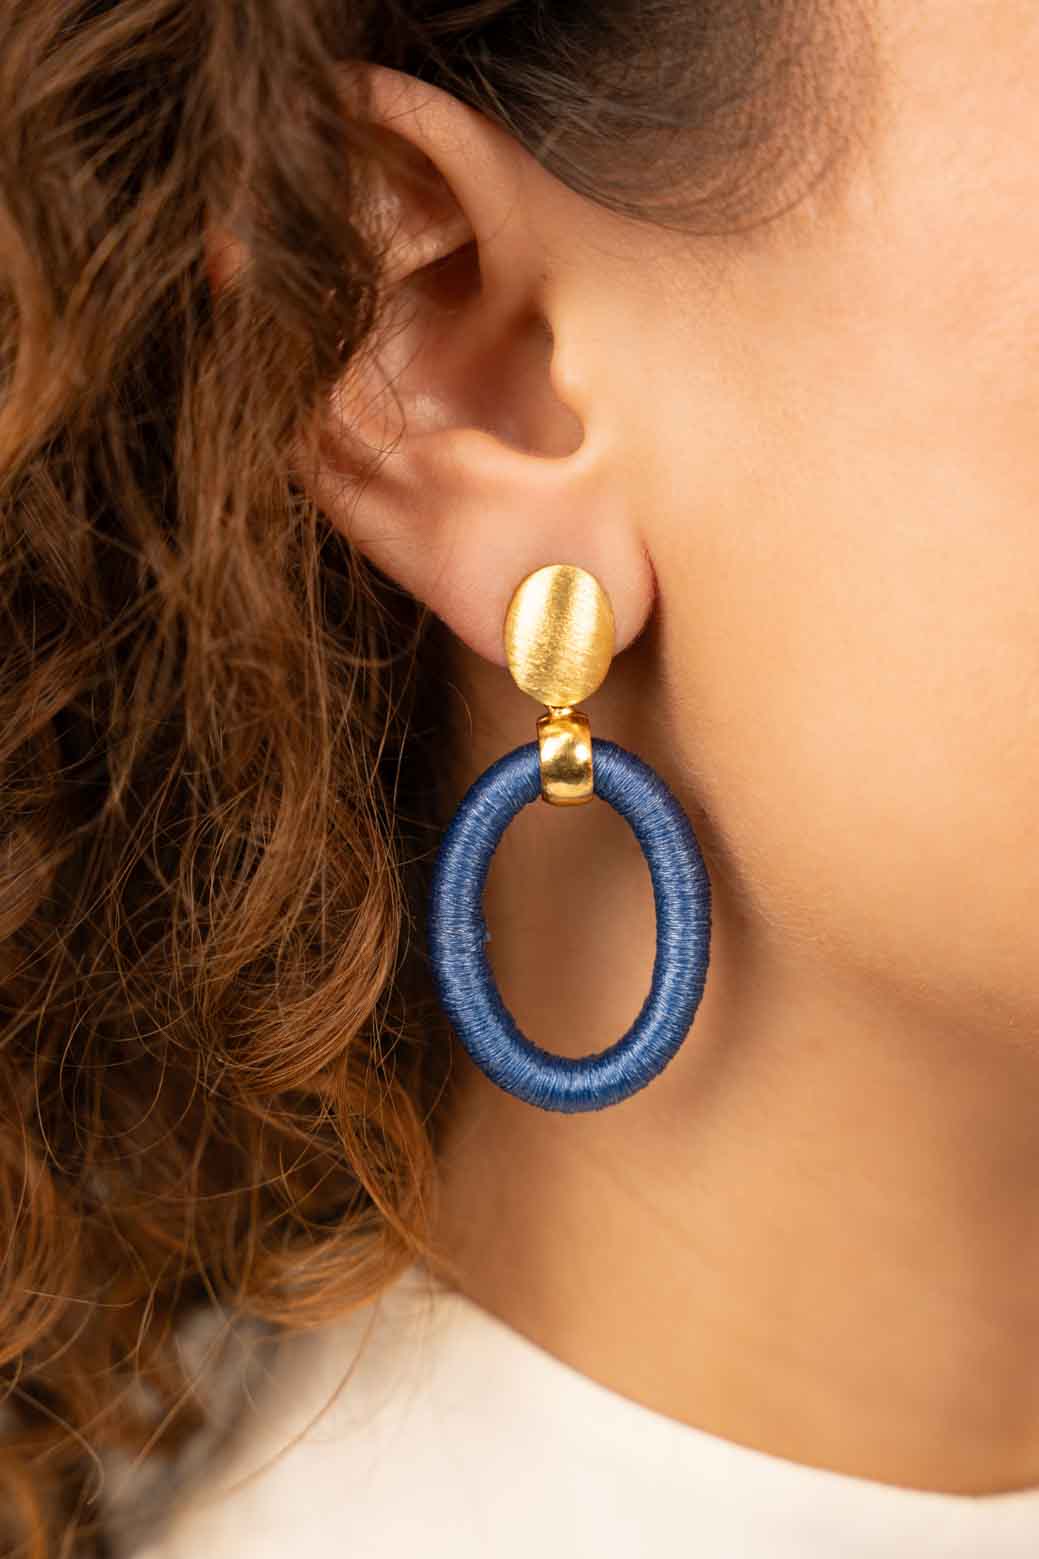 Blue oval earrings threaten S Faye